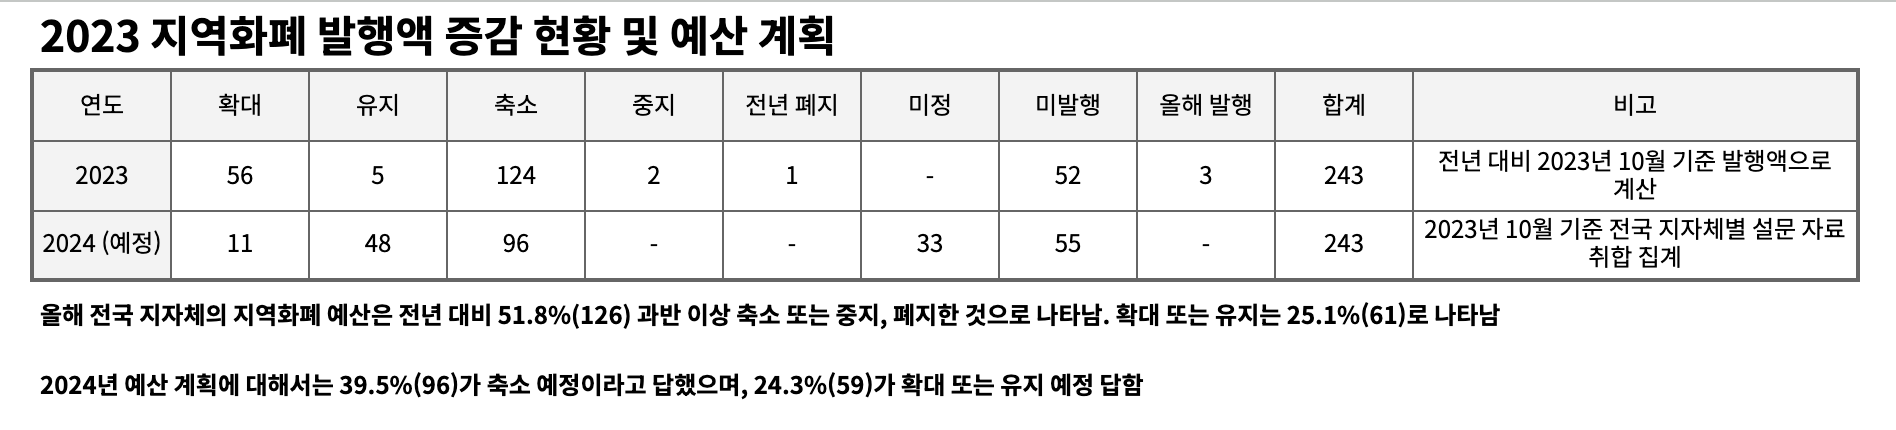 지역화폐 활성 지수 1위 경북 구미, 비활성 1위 대전